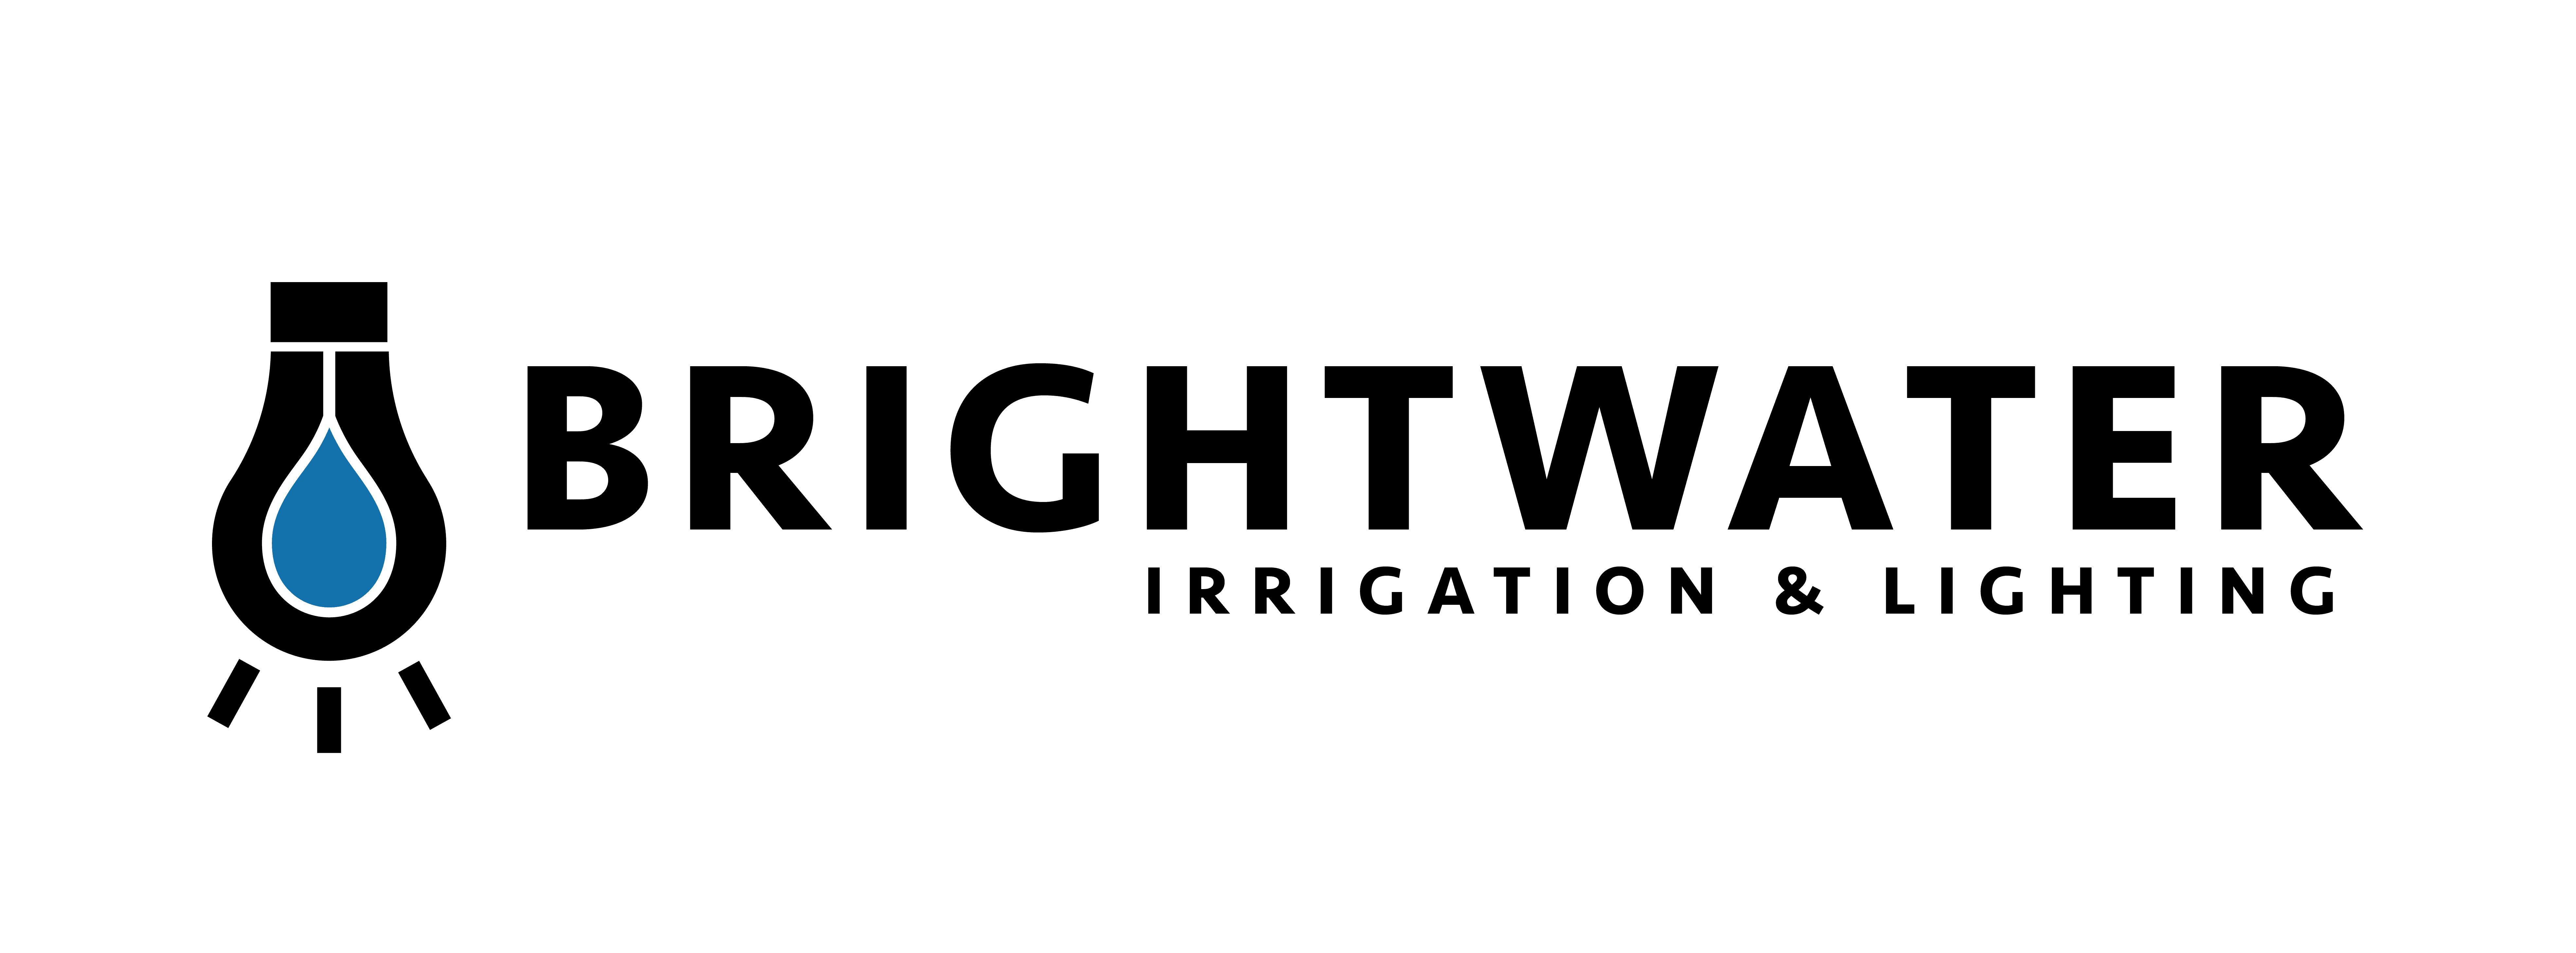 Brightwater Irrigation & Lighting Muskoka